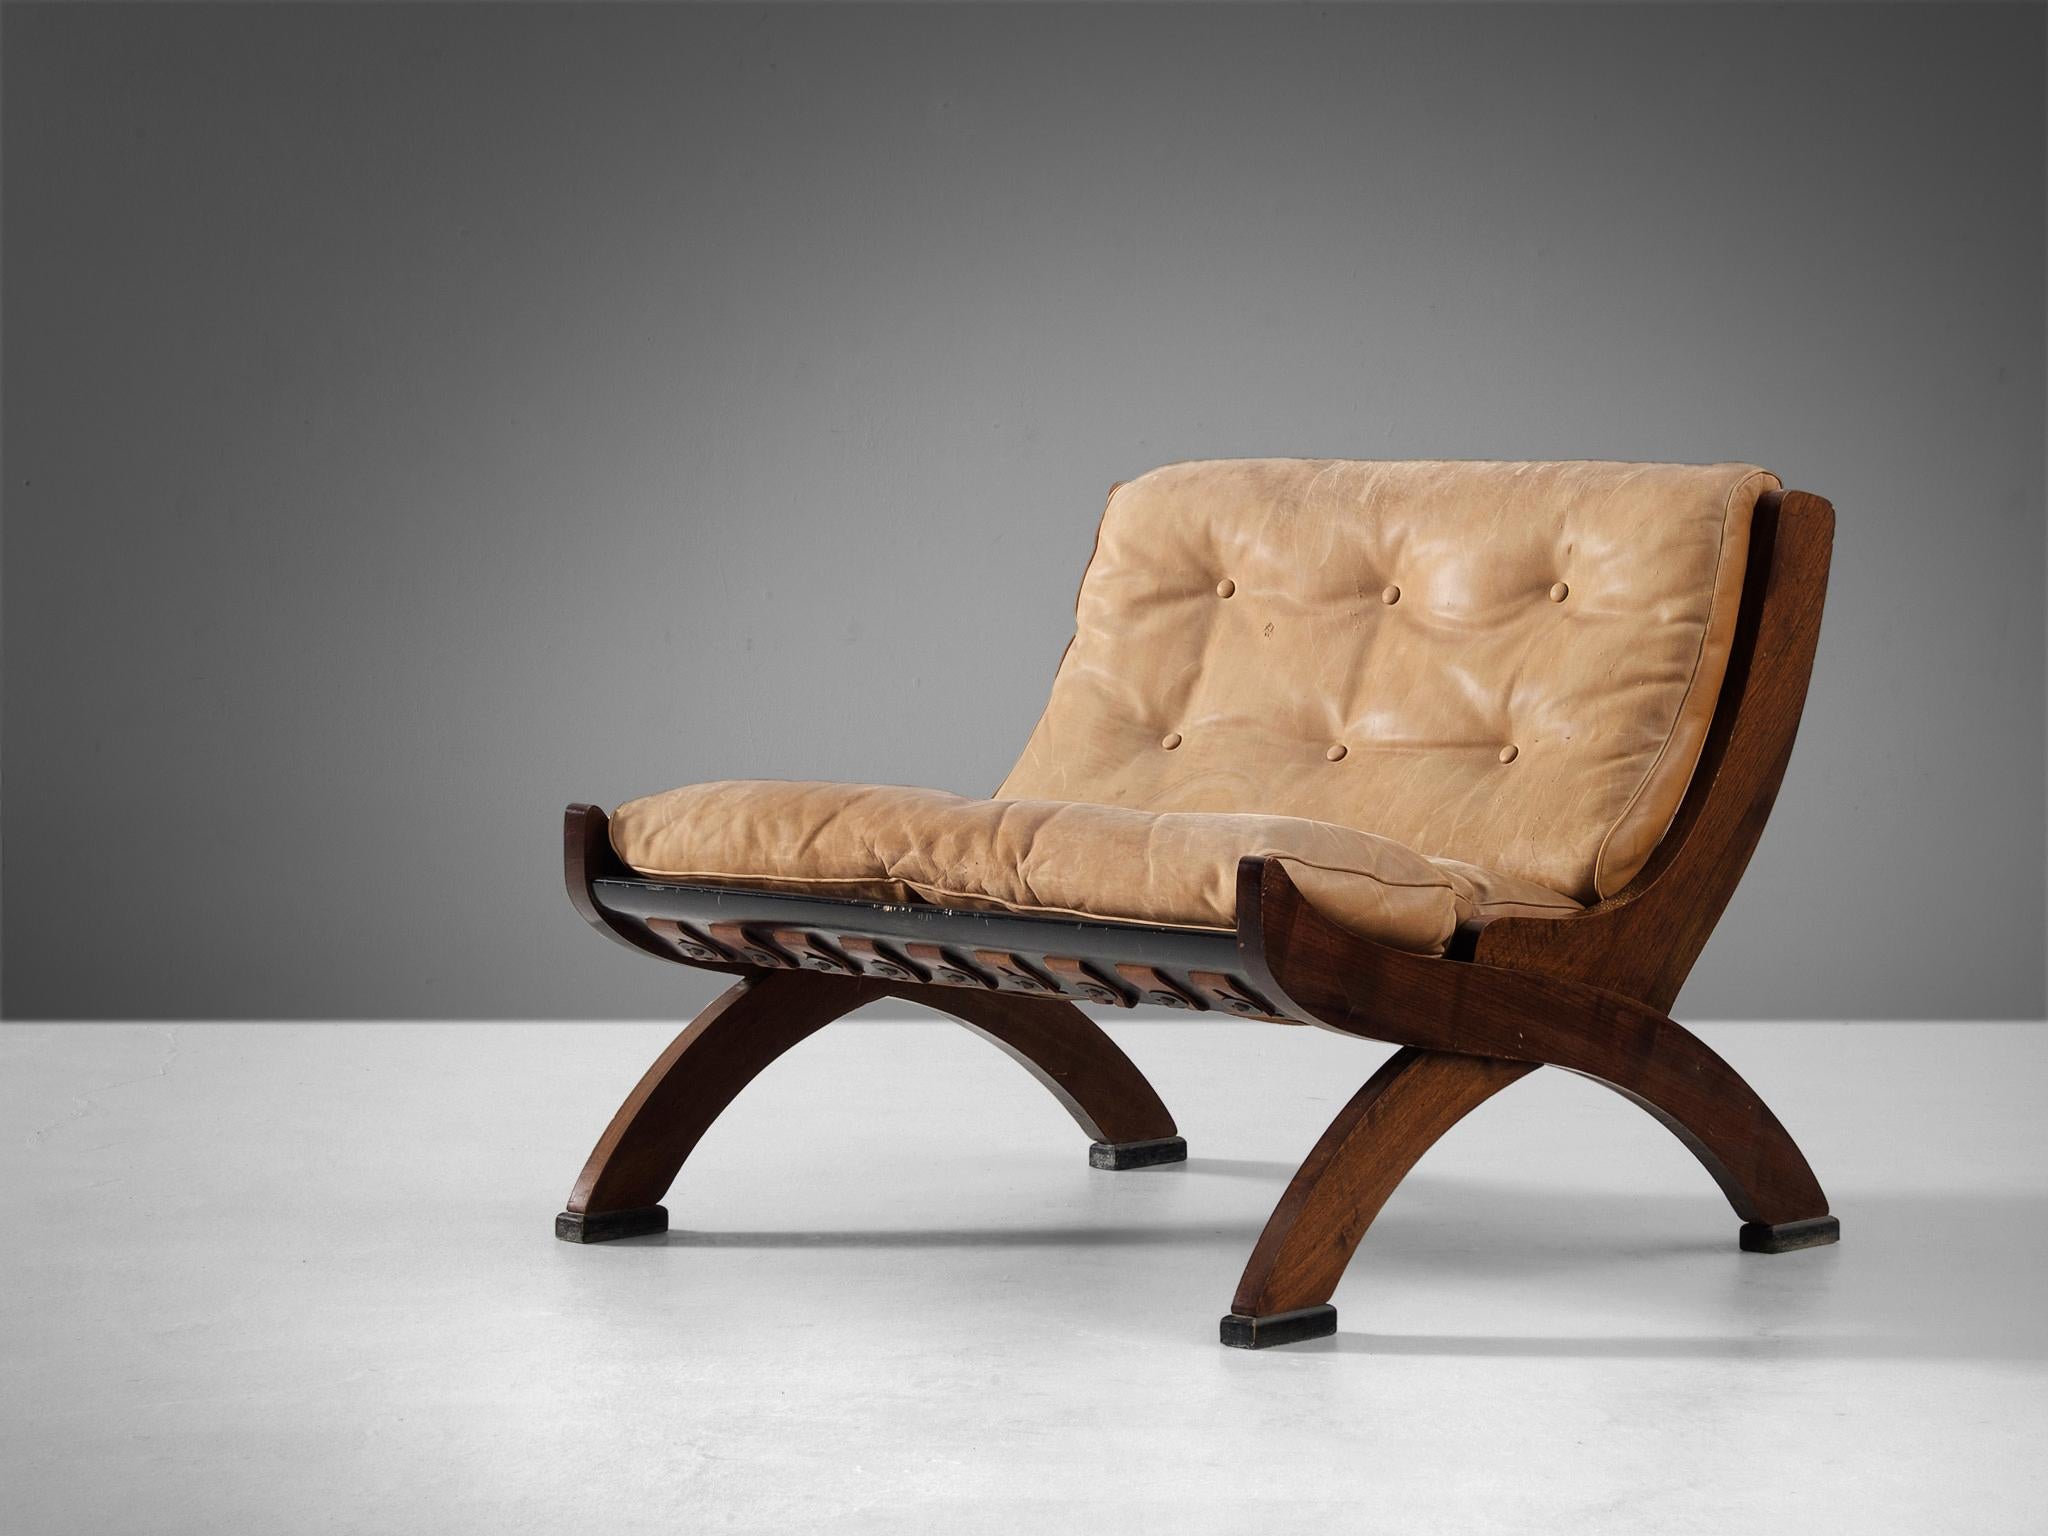 Marco Comolli pour A.C.F. De Padova, chaise longue modèle 'CP1', cuir, noyer, Italie, années 1960 

Cette chaise pantoufle bien construite incarne une splendide structure basée sur une esthétique simpliste, naturelle et intemporelle. Le cadre en